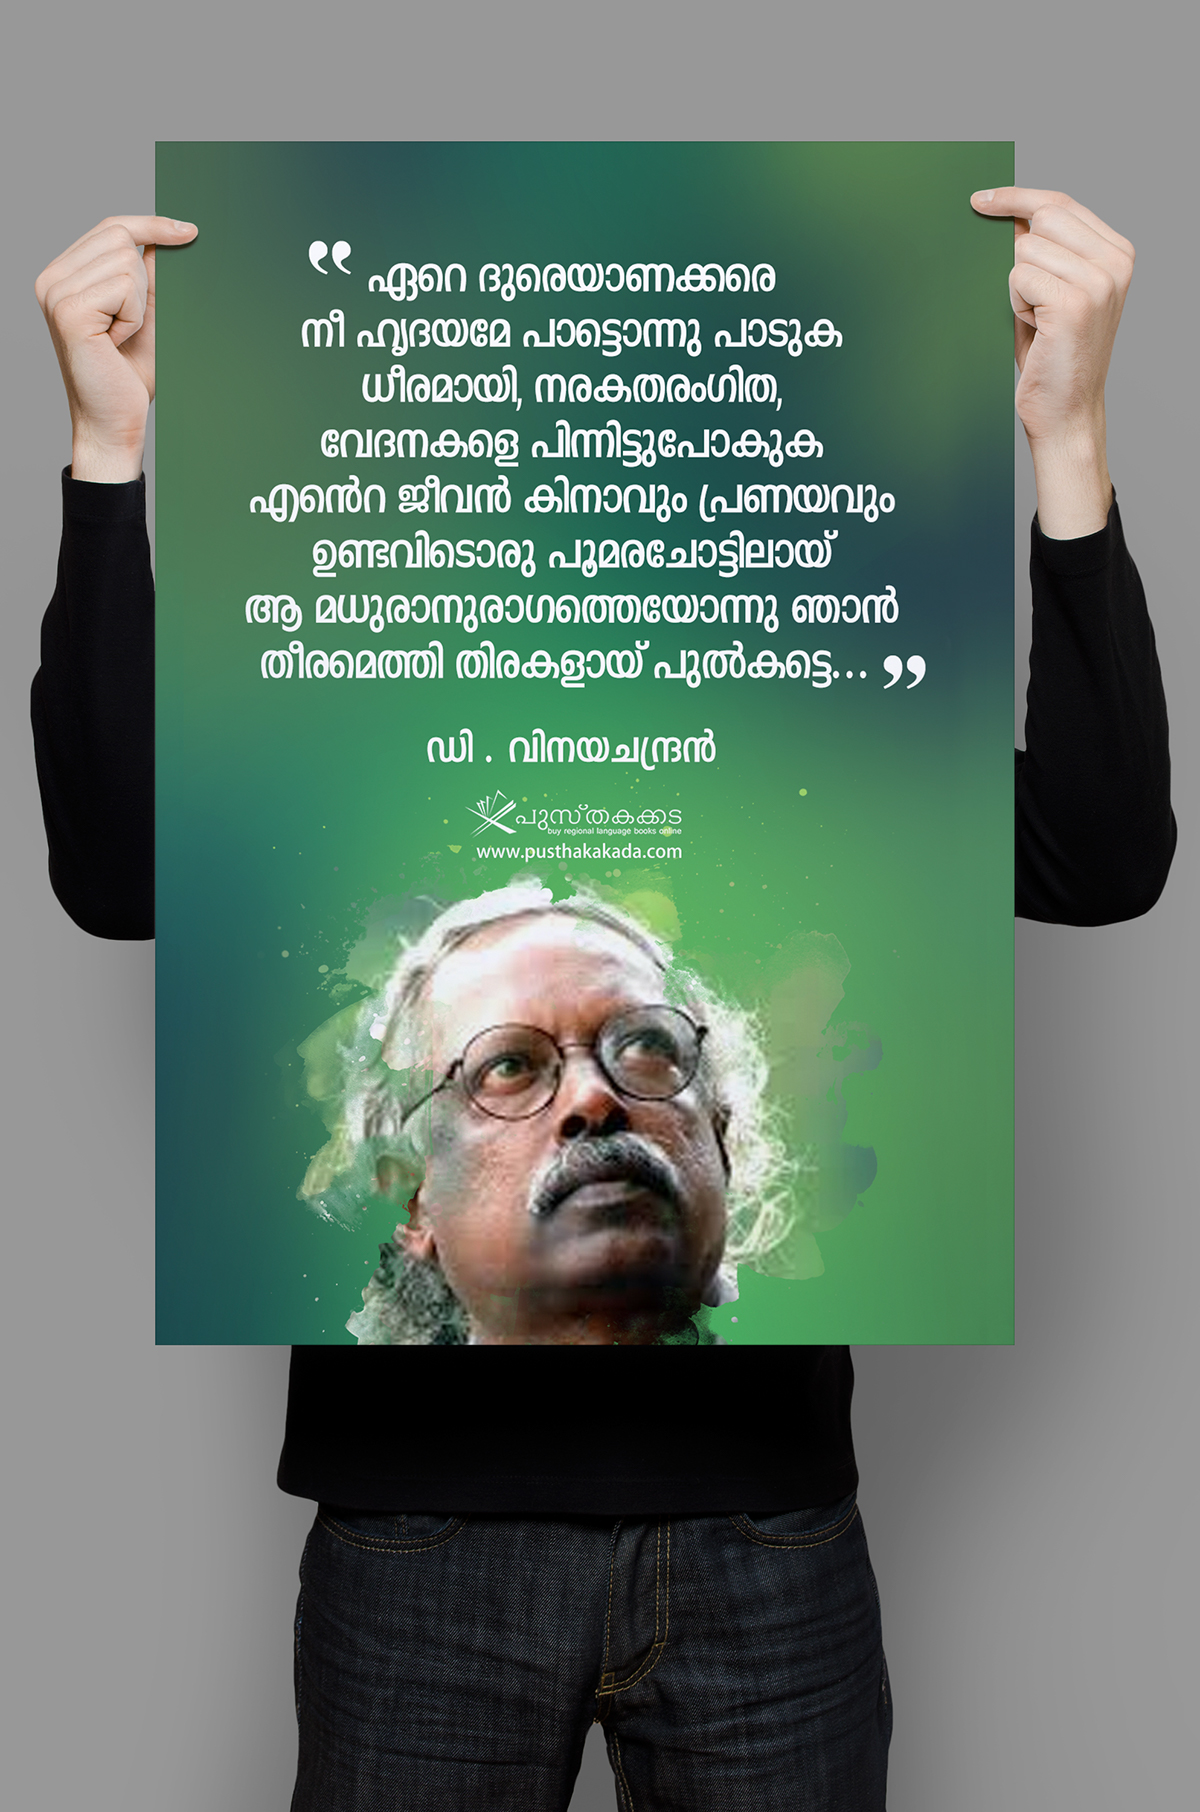 qoutes malayalam Famous Writers facebook post pusthakakada Online Promotion